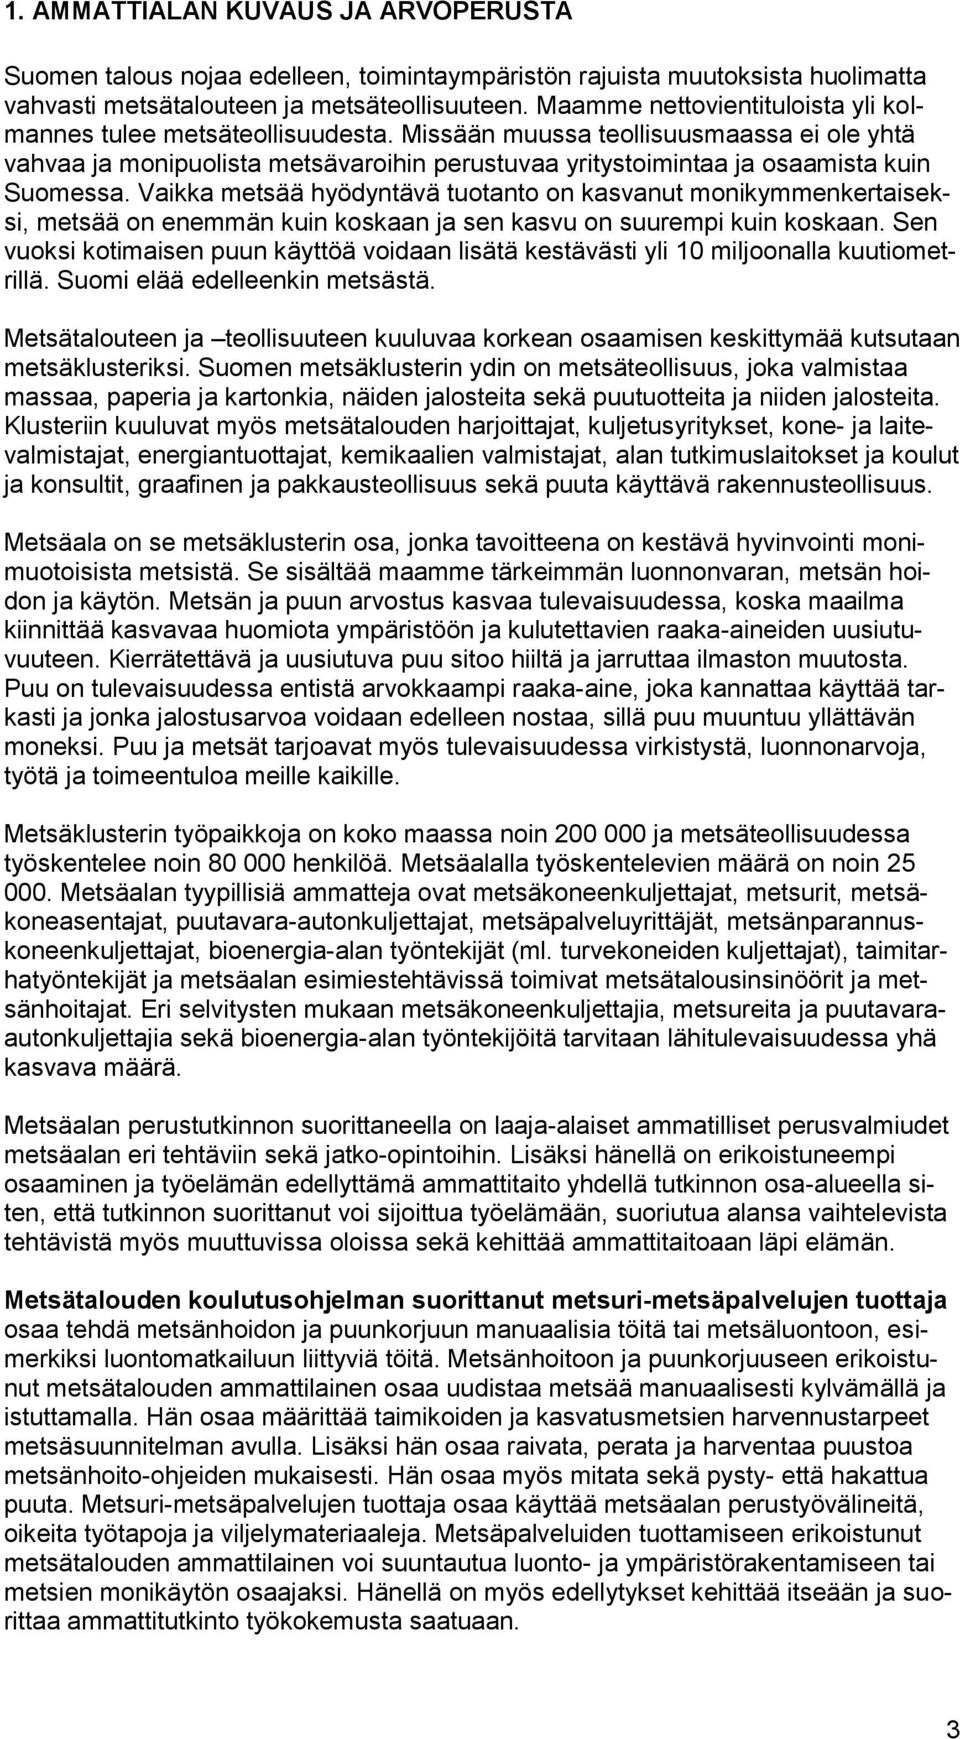 Missään muussa teollisuusmaassa ei ole yhtä vahvaa ja monipuolista metsävaroihin perustuvaa yritystoimintaa ja osaamista kuin Suomessa.